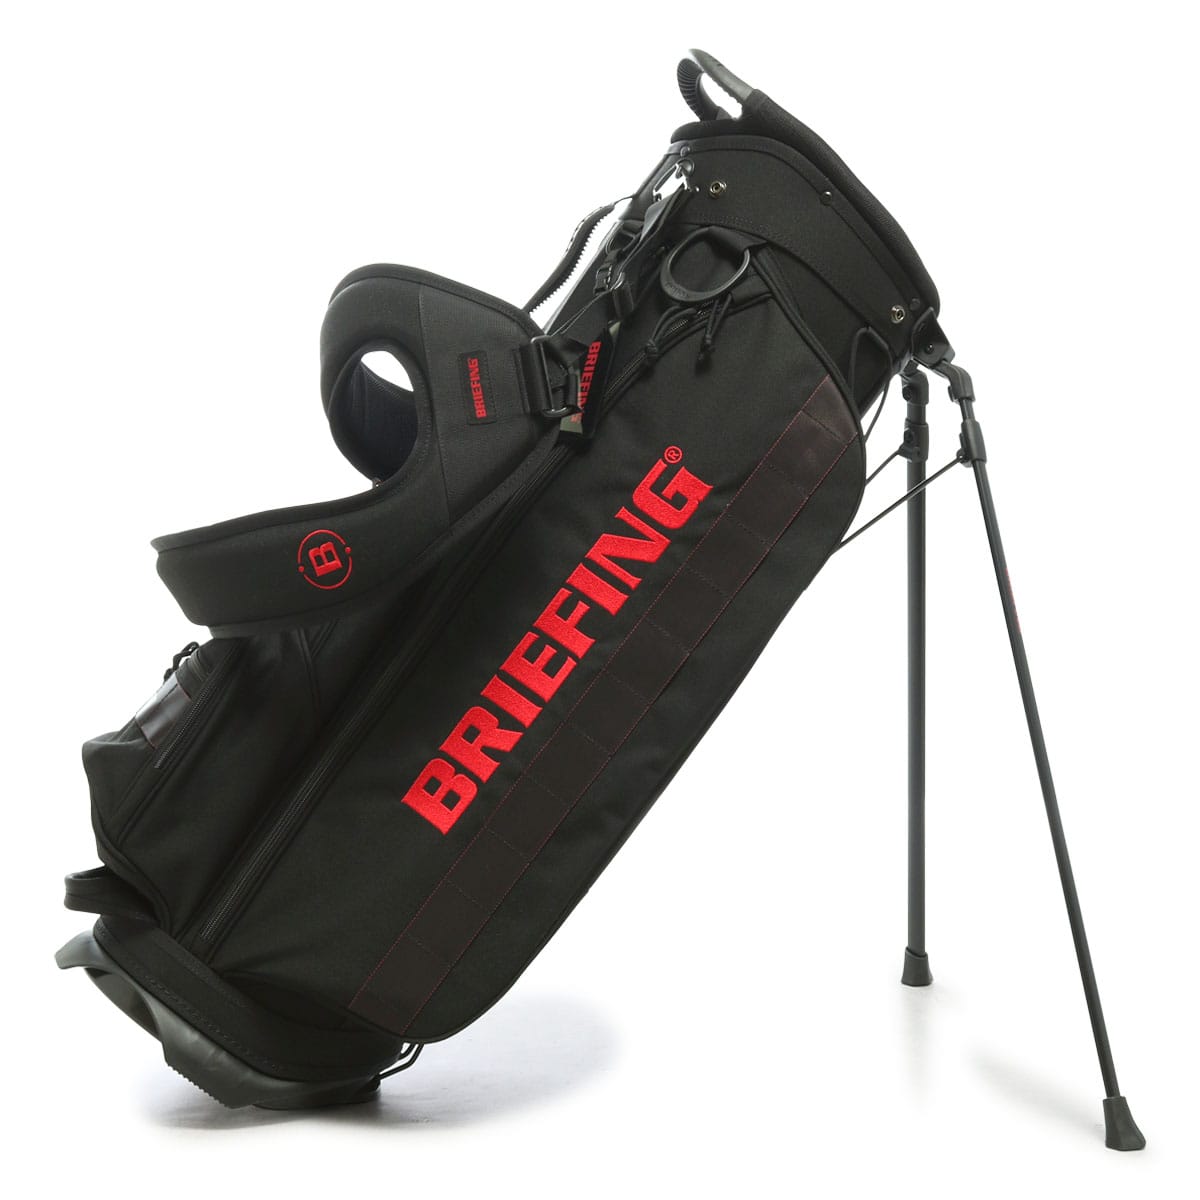 ブリーフィング ゴルフ キャディバッグ スタンド型 9.5型 4分割 3.75kg CR-4 #03 TL BRG231D07 BRIEFING |  撥水 ベーシック ゴルフバッグ